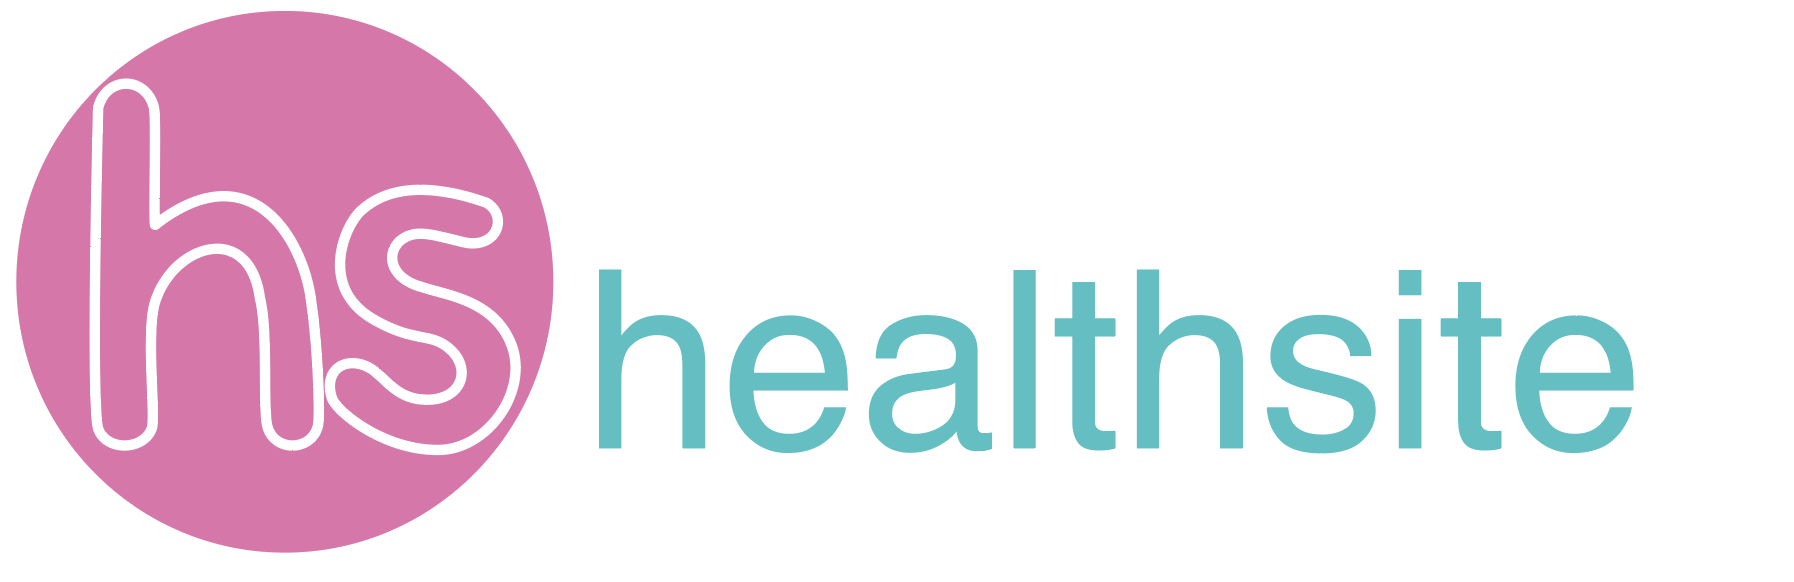 Healthsite